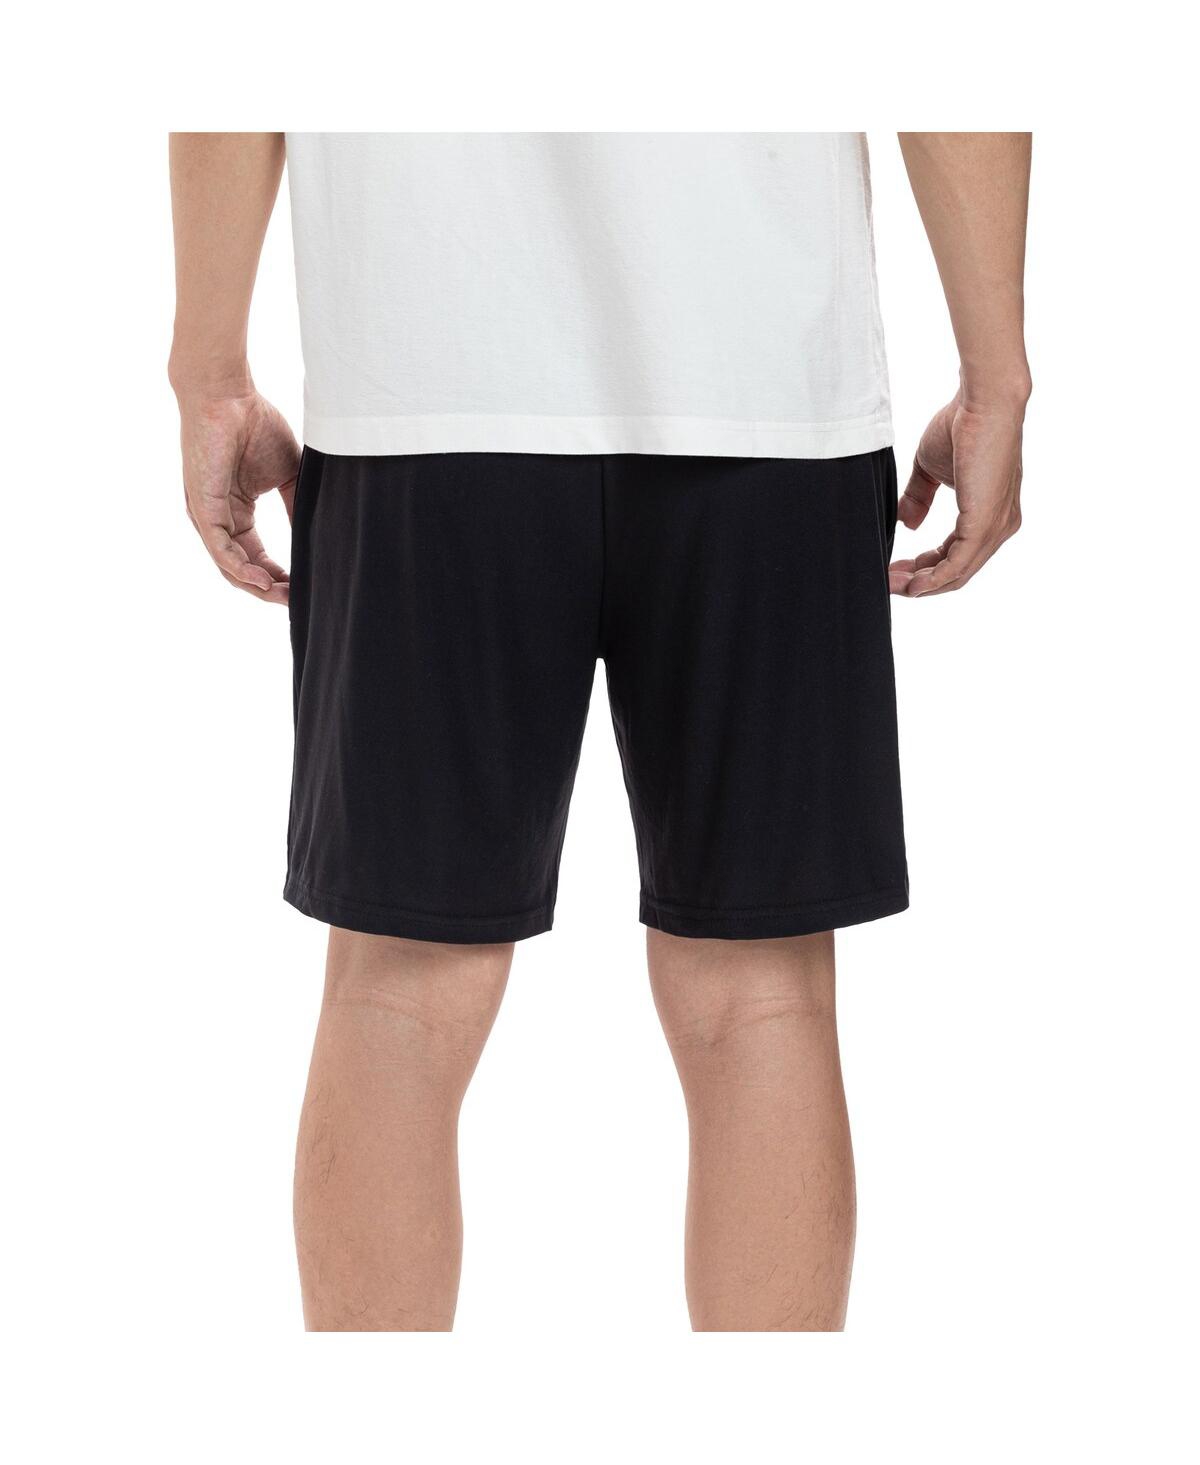 Shop Concepts Sport Men's  Black Las Vegas Raiders Gauge Jam Two-pack Shorts Set